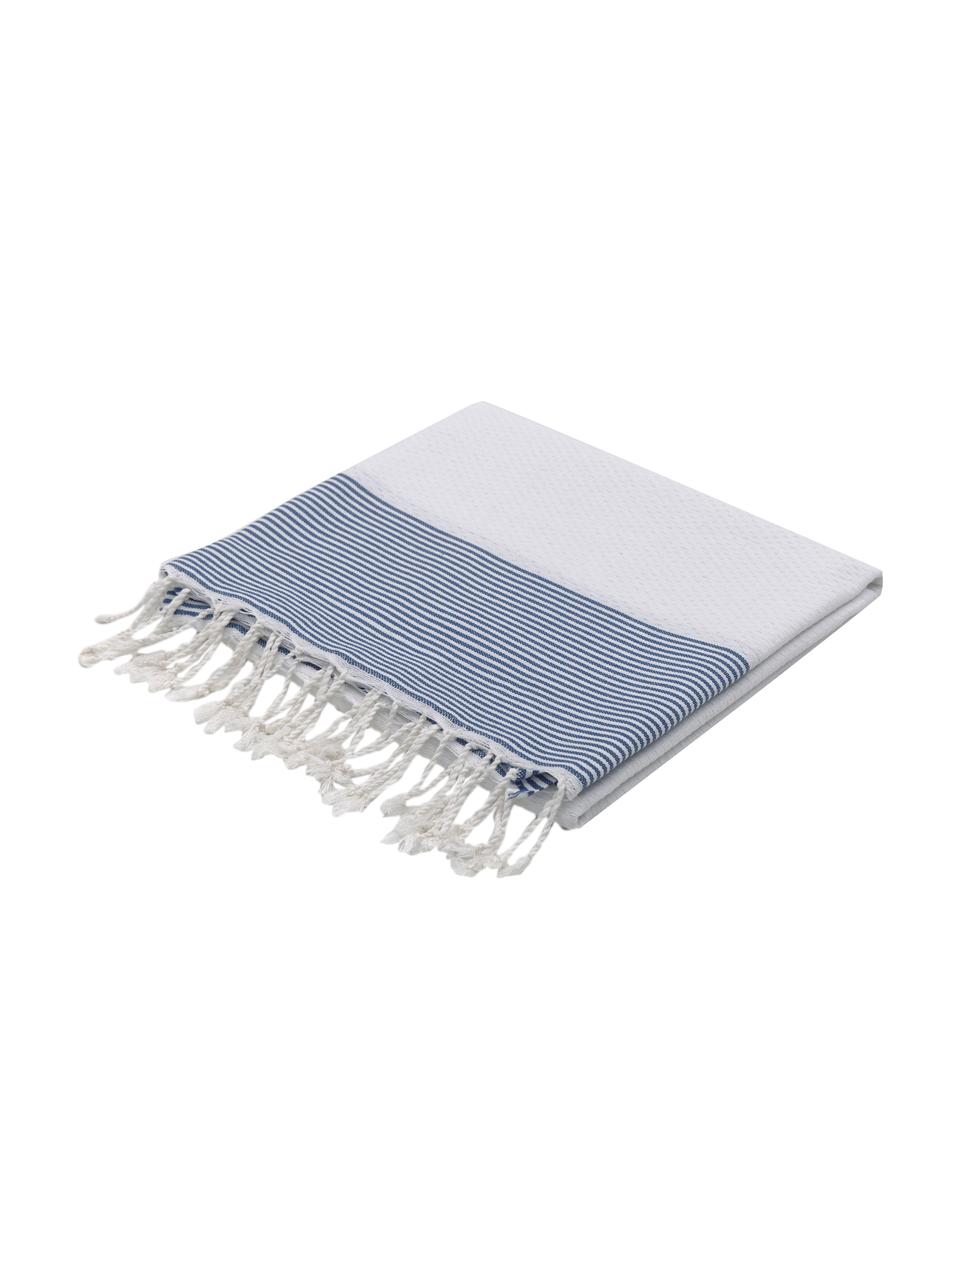 Ręcznik plażowy z frędzlami Ibiza, 100% bawełna, Biały, niebieski, S 100 x D 200 cm